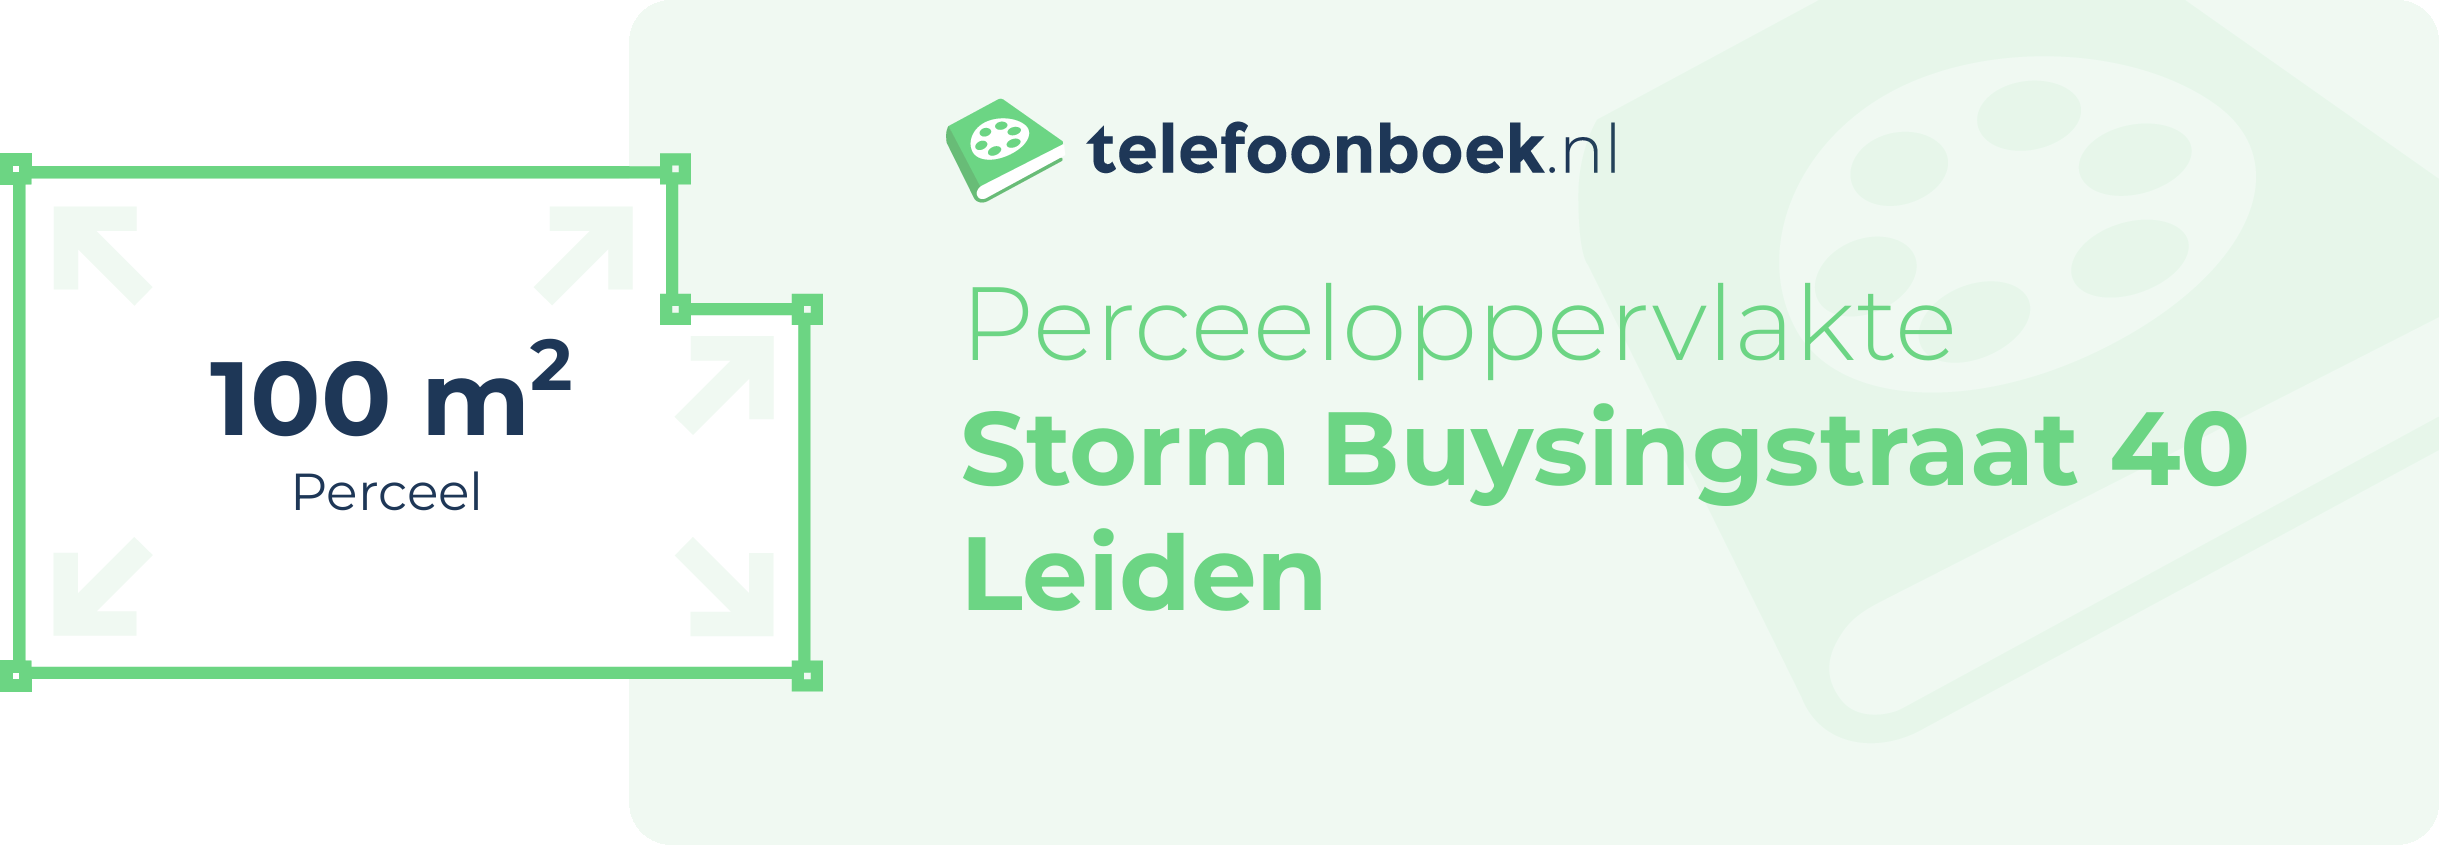 Perceeloppervlakte Storm Buysingstraat 40 Leiden